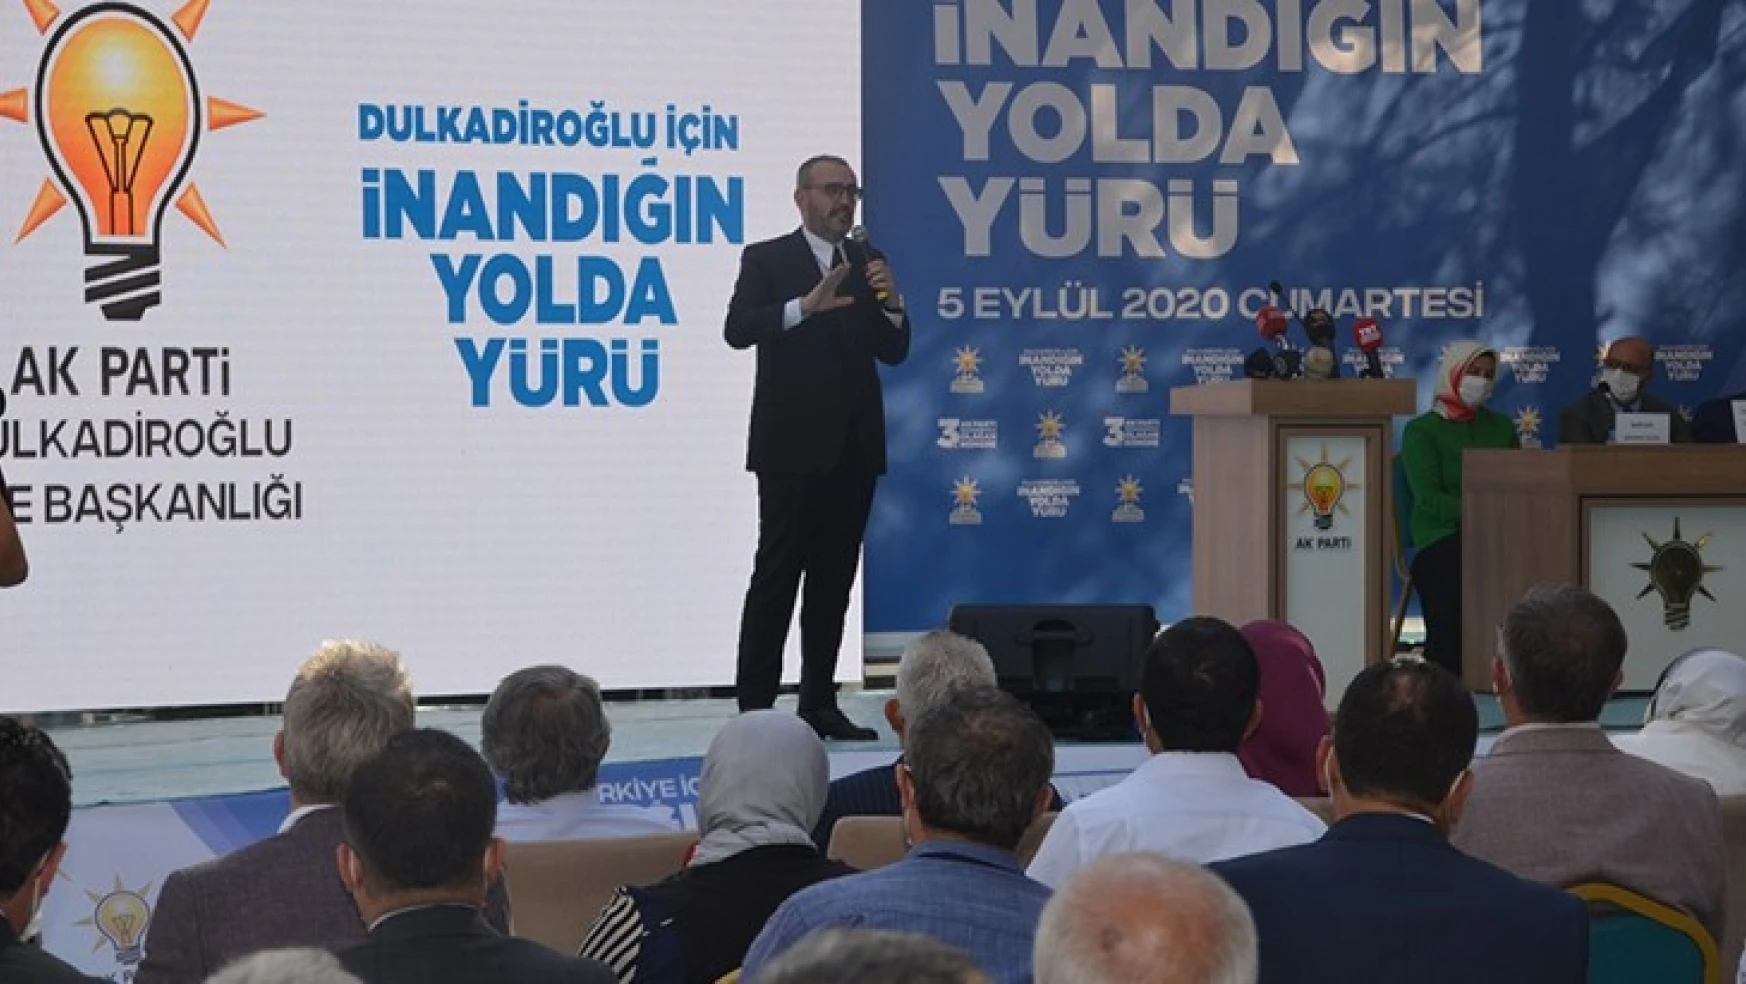 AK Parti Genel Başkan Yardımcı Ünal, Kahramanmaraş'ta